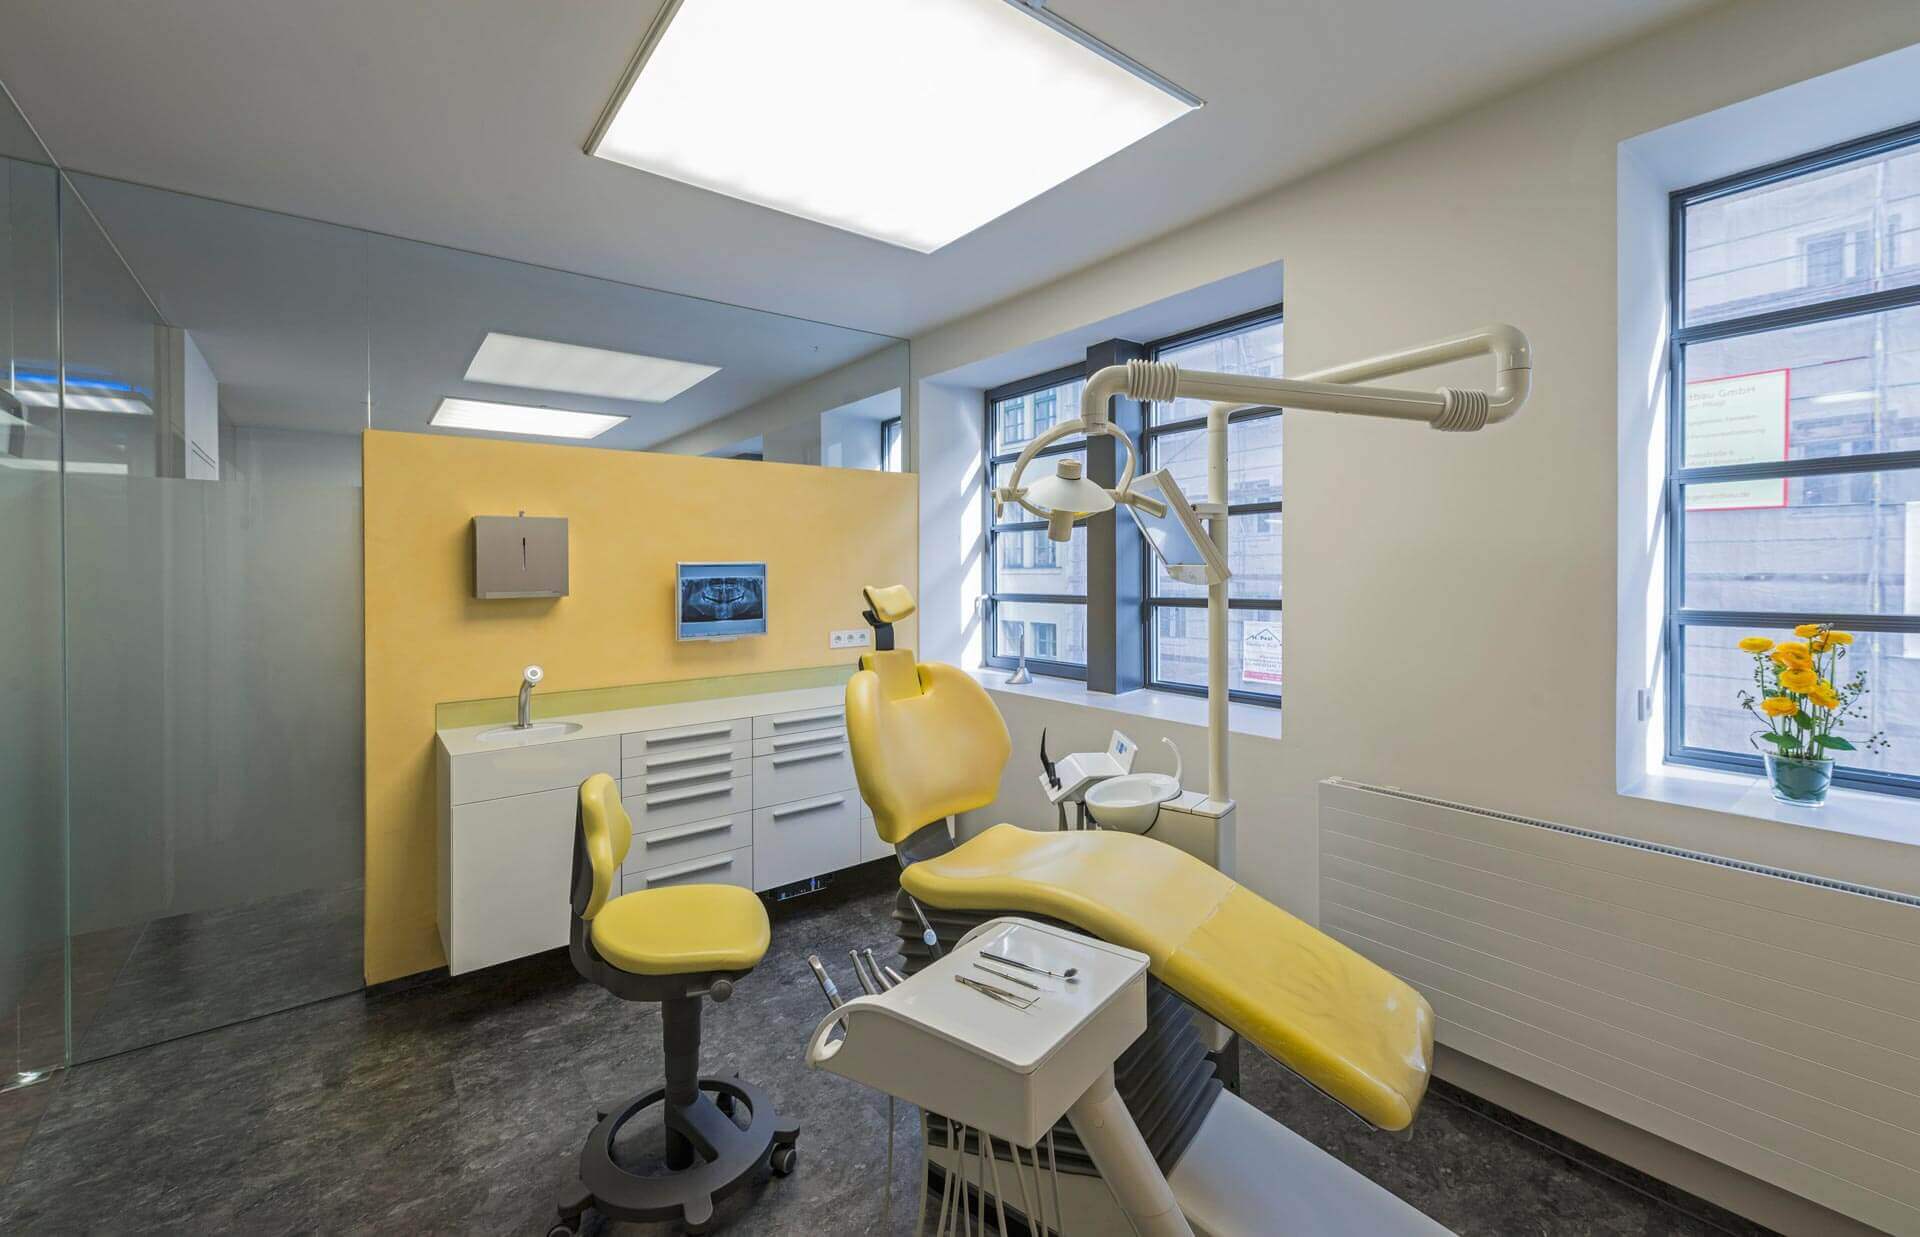 Behandlungsraum mit Liegestuhl - Dr. med. dent. Sabine Stelzer MSc. ➤ Ihr Zahnarzt in München ☎ +49 89 448 7404